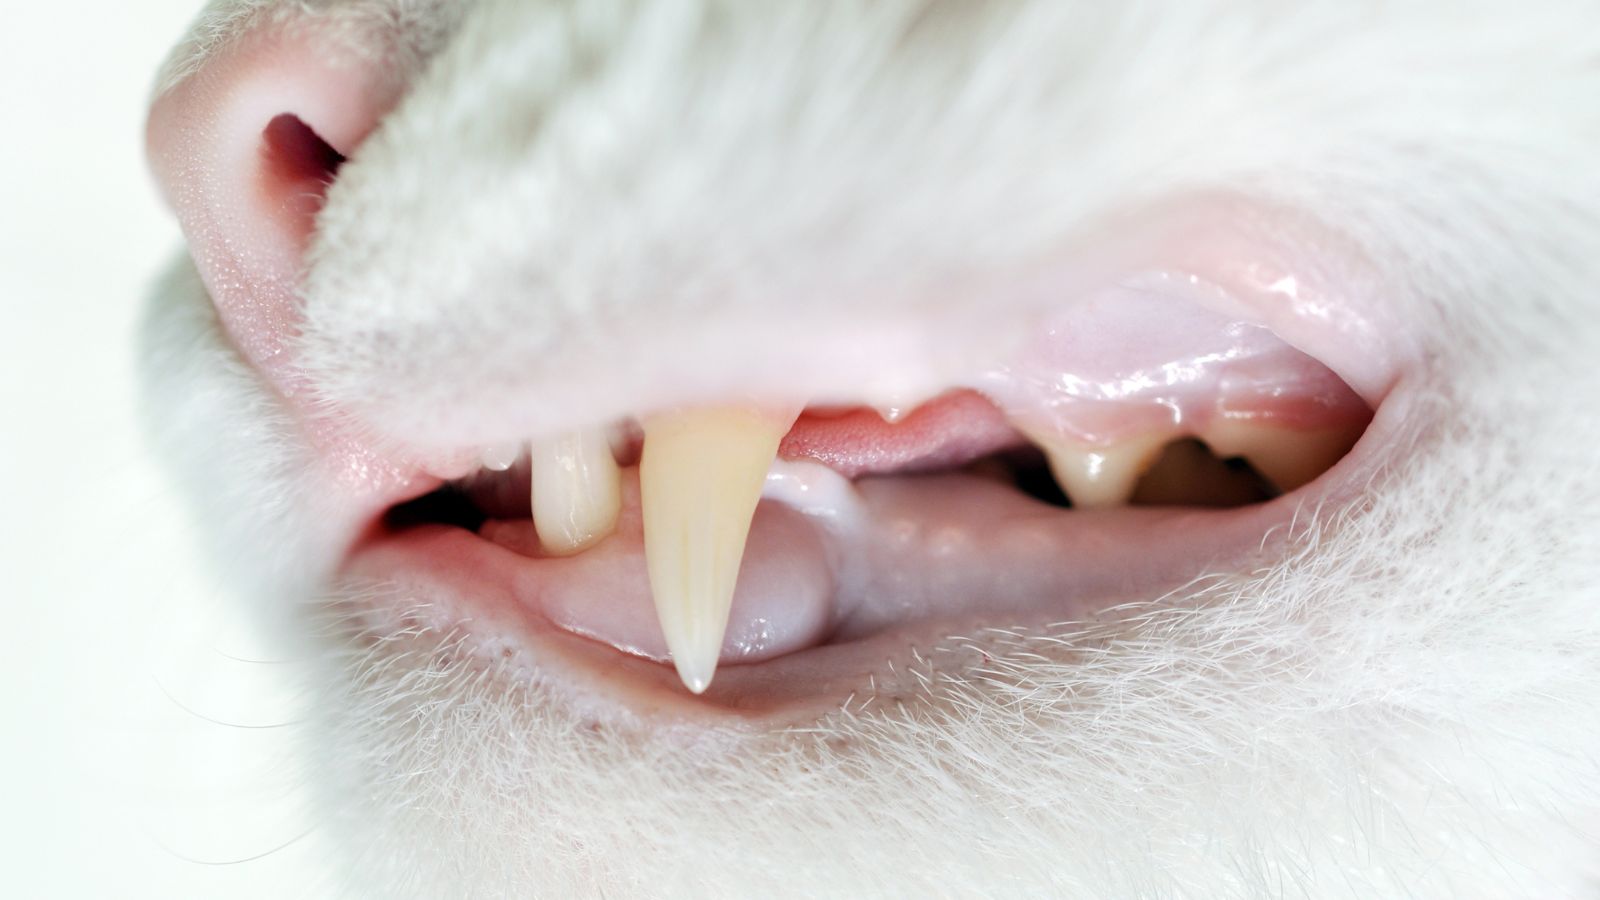 歯石がつきづらいキャットフードの特徴を管理栄養士が解説